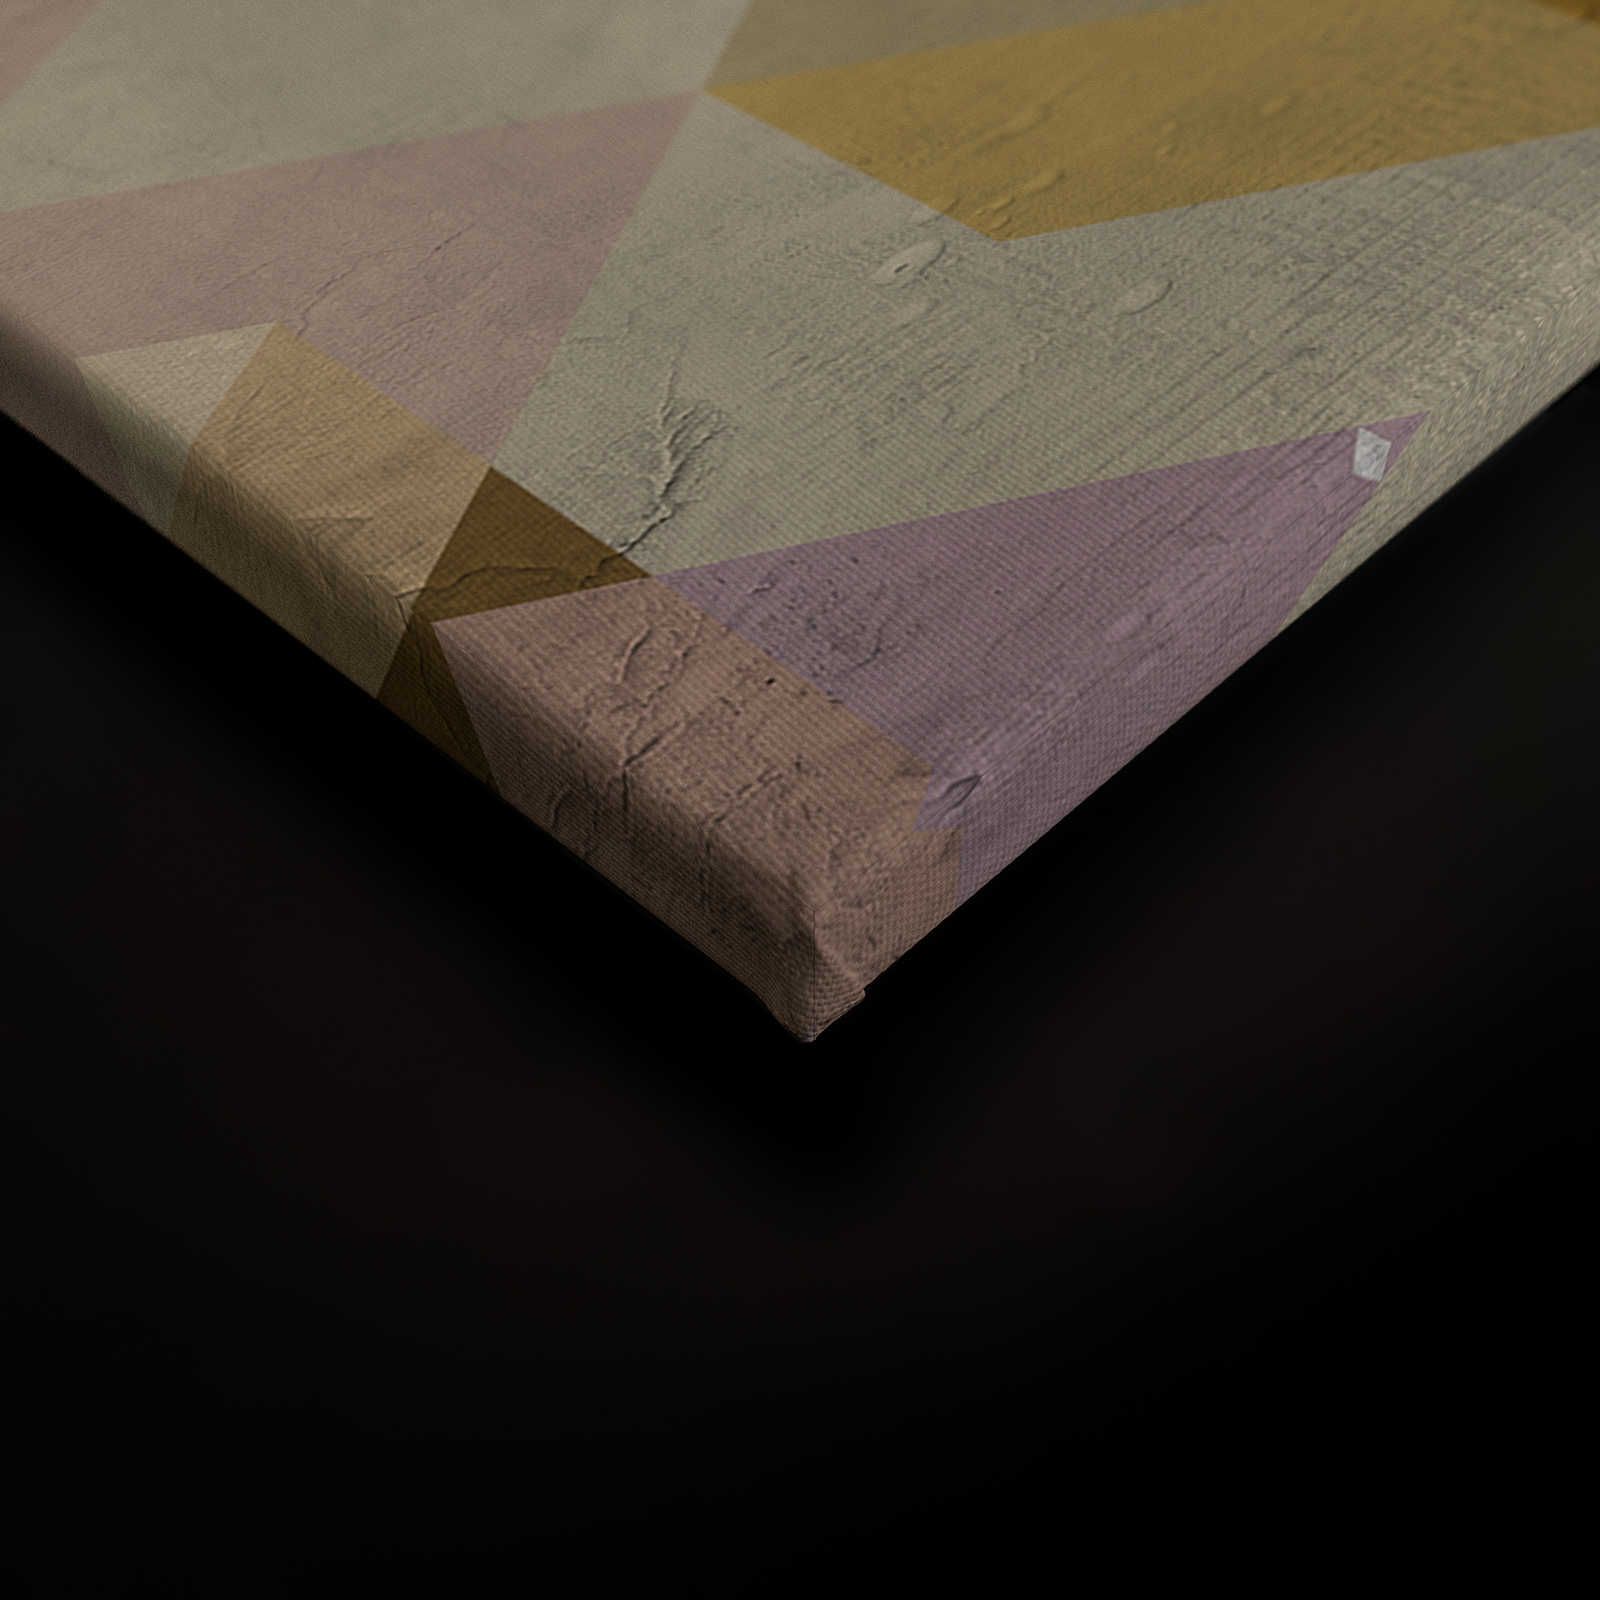             Quadro su tela Diamanti, colorato e geometrico, aspetto usato - 0,90 m x 0,60 m
        